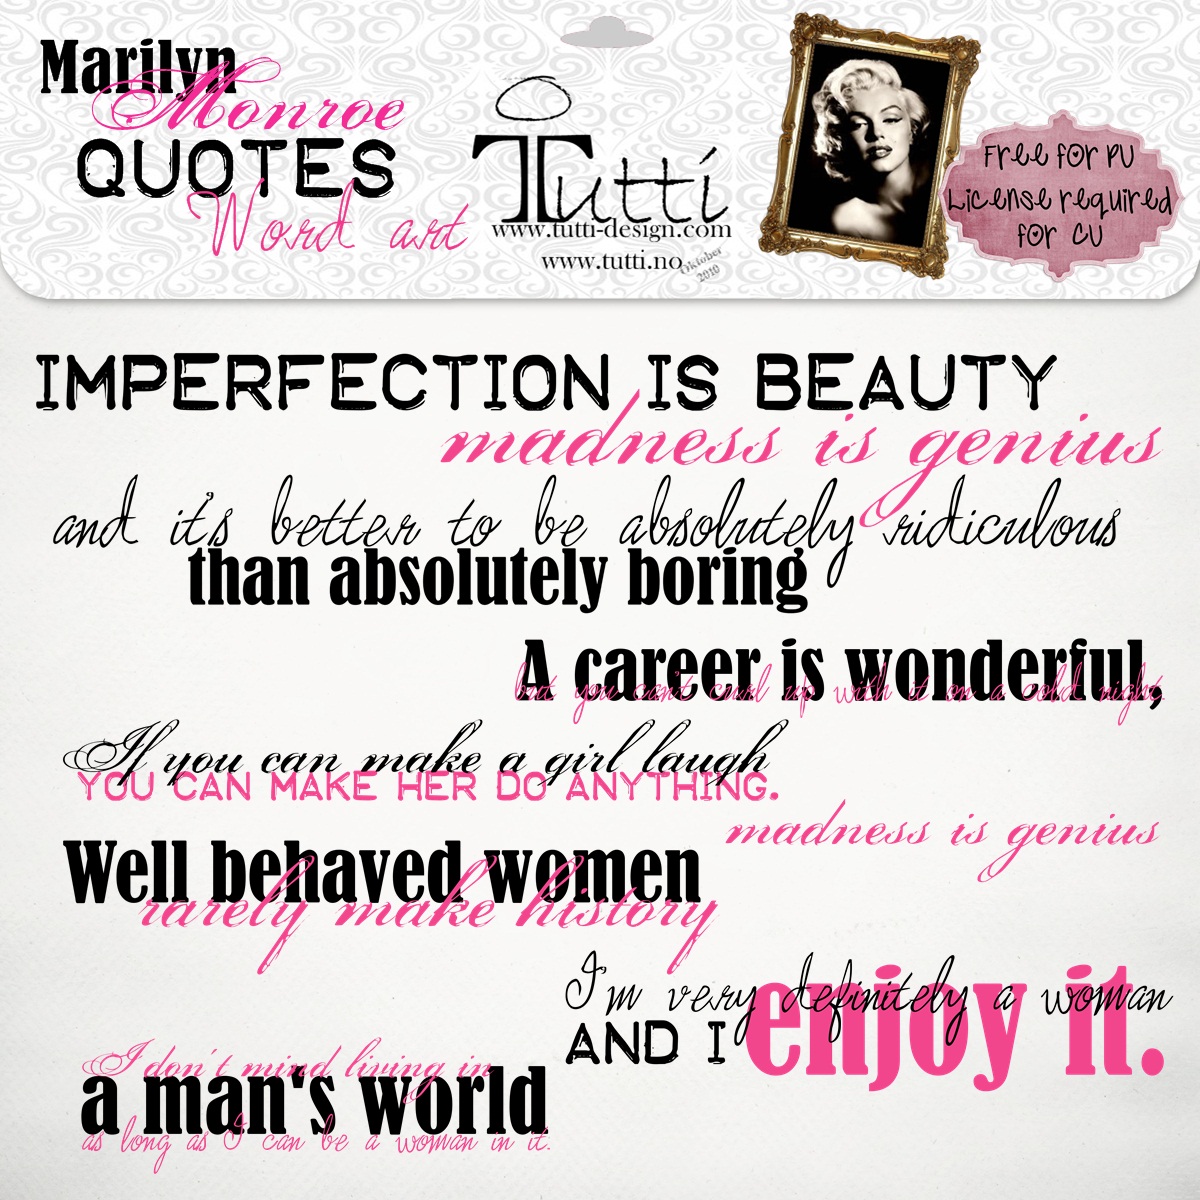 http://1.bp.blogspot.com/_vupLwp3FATY/TFbrB-nNjdI/AAAAAAAABzk/evSJz_OiJls/s1600/Marilyn+Monroe+quotes+word+art.jpg